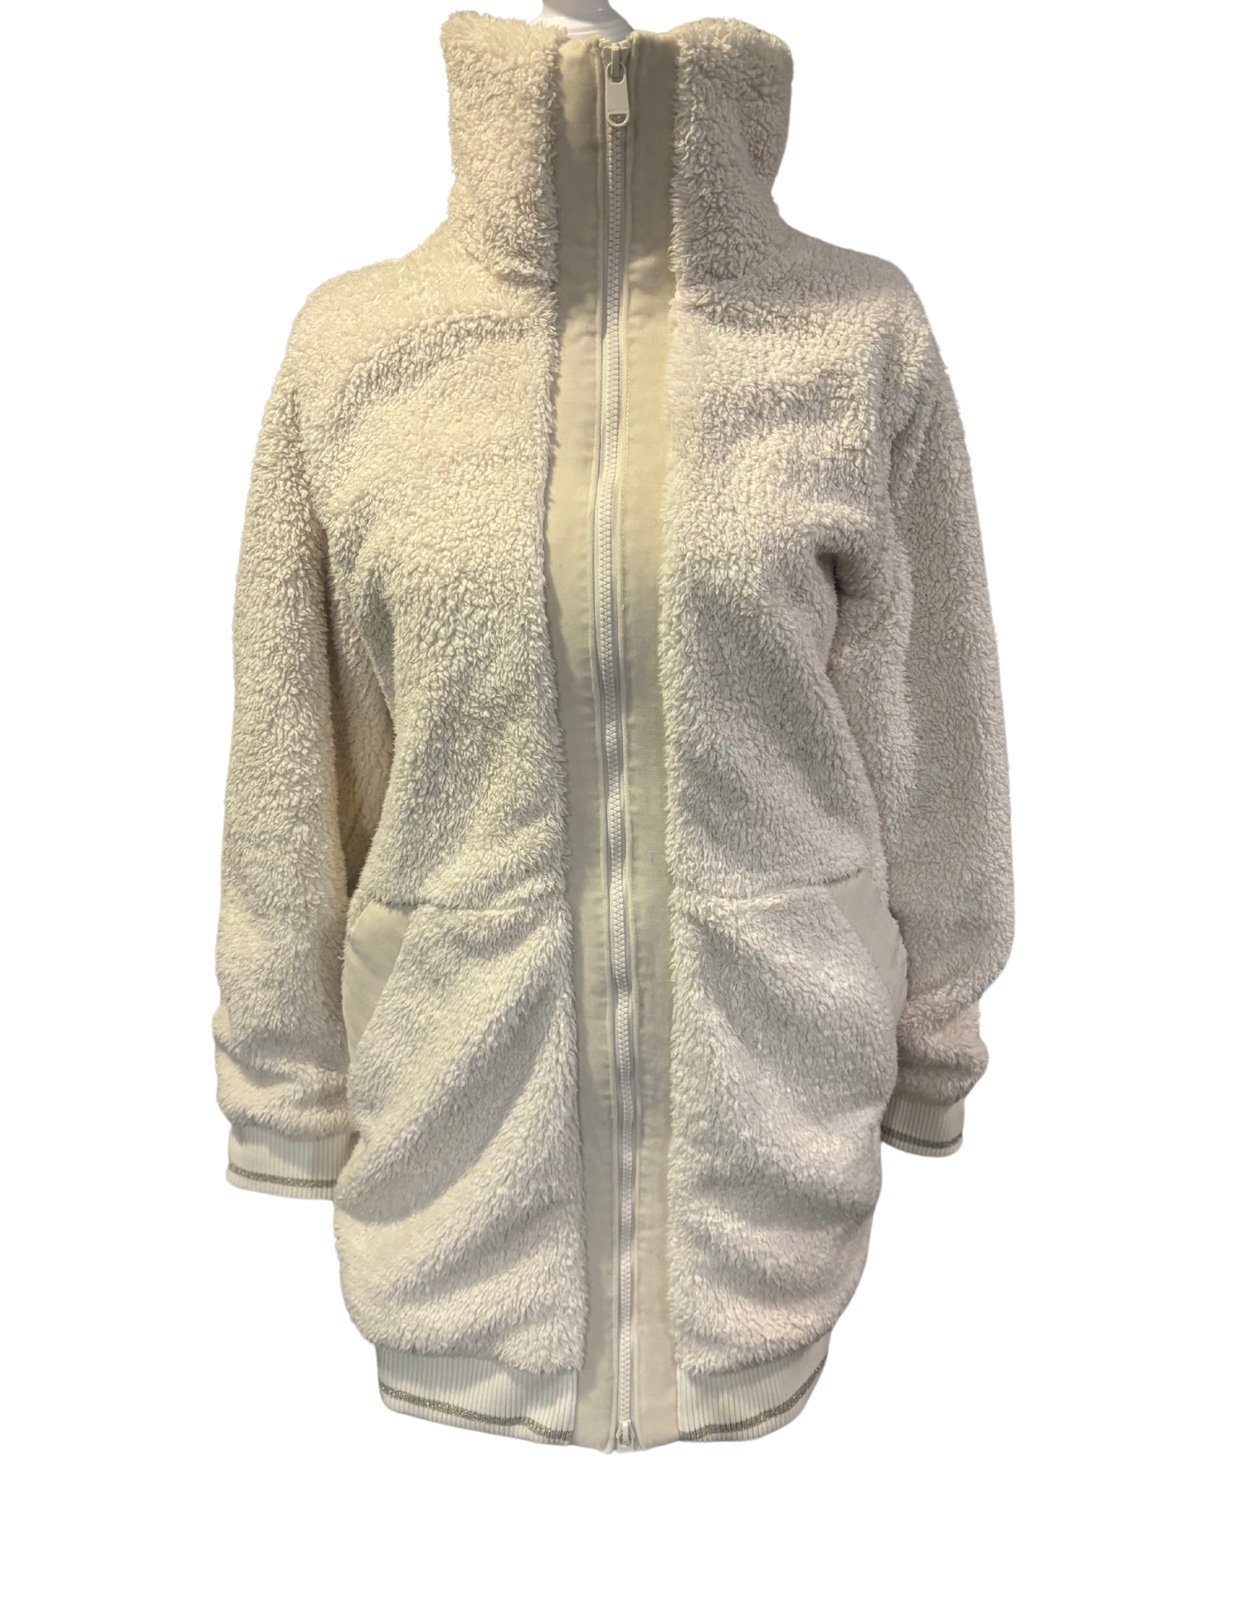 Buy Athleta Sherpa coat- ivory color size M hktszVLIQ O